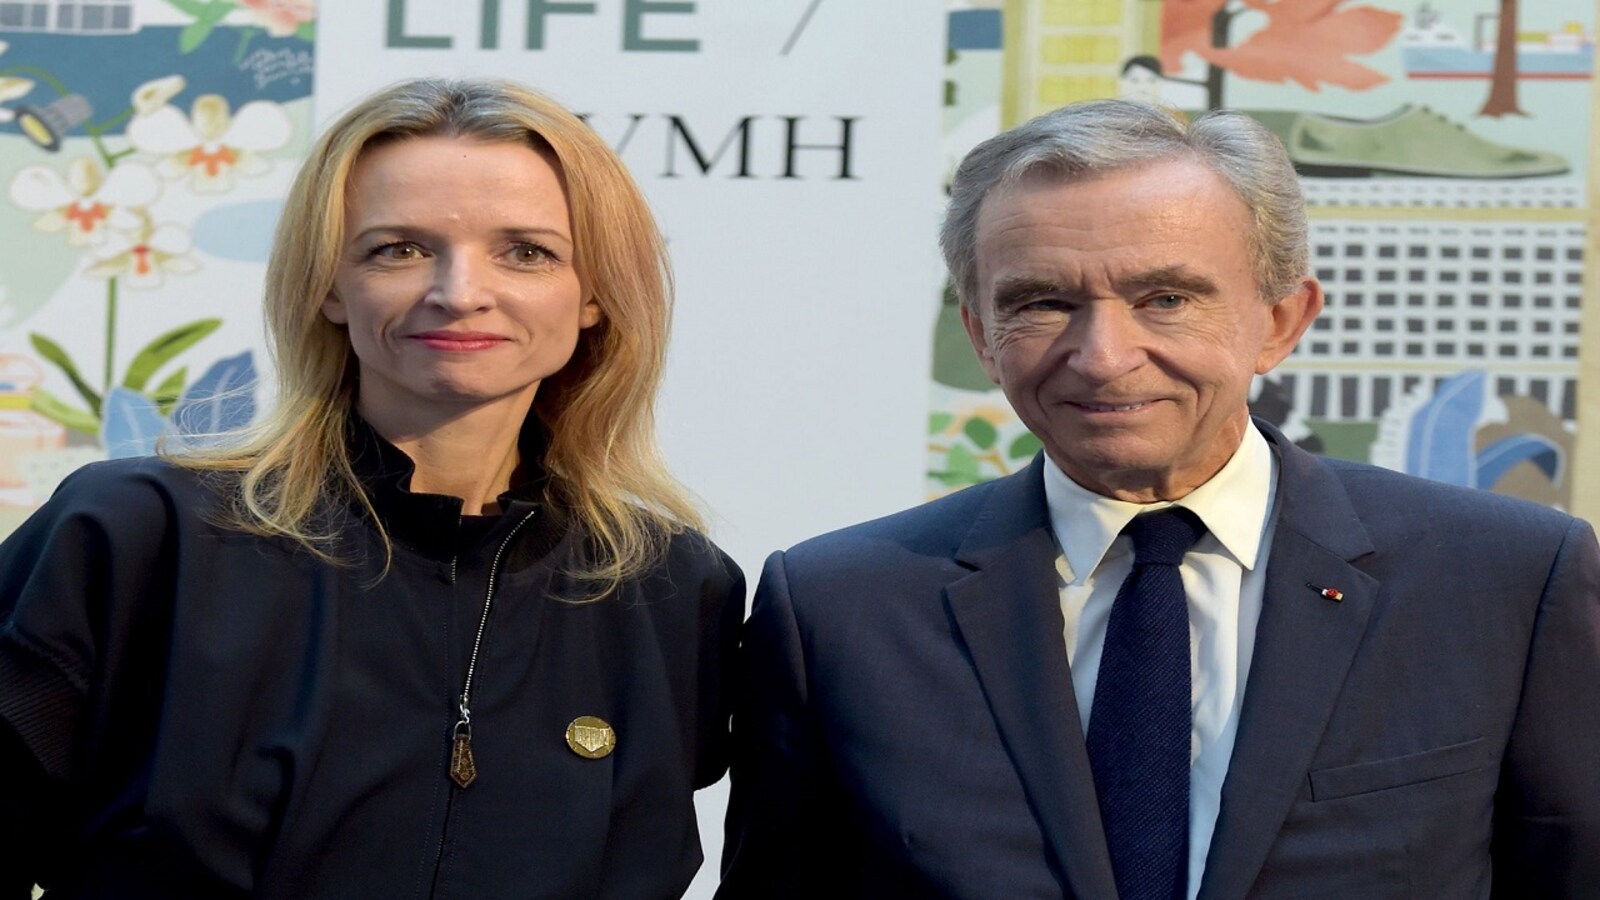 Bernard Arnault Can Keep Running LVMH Until He's 80